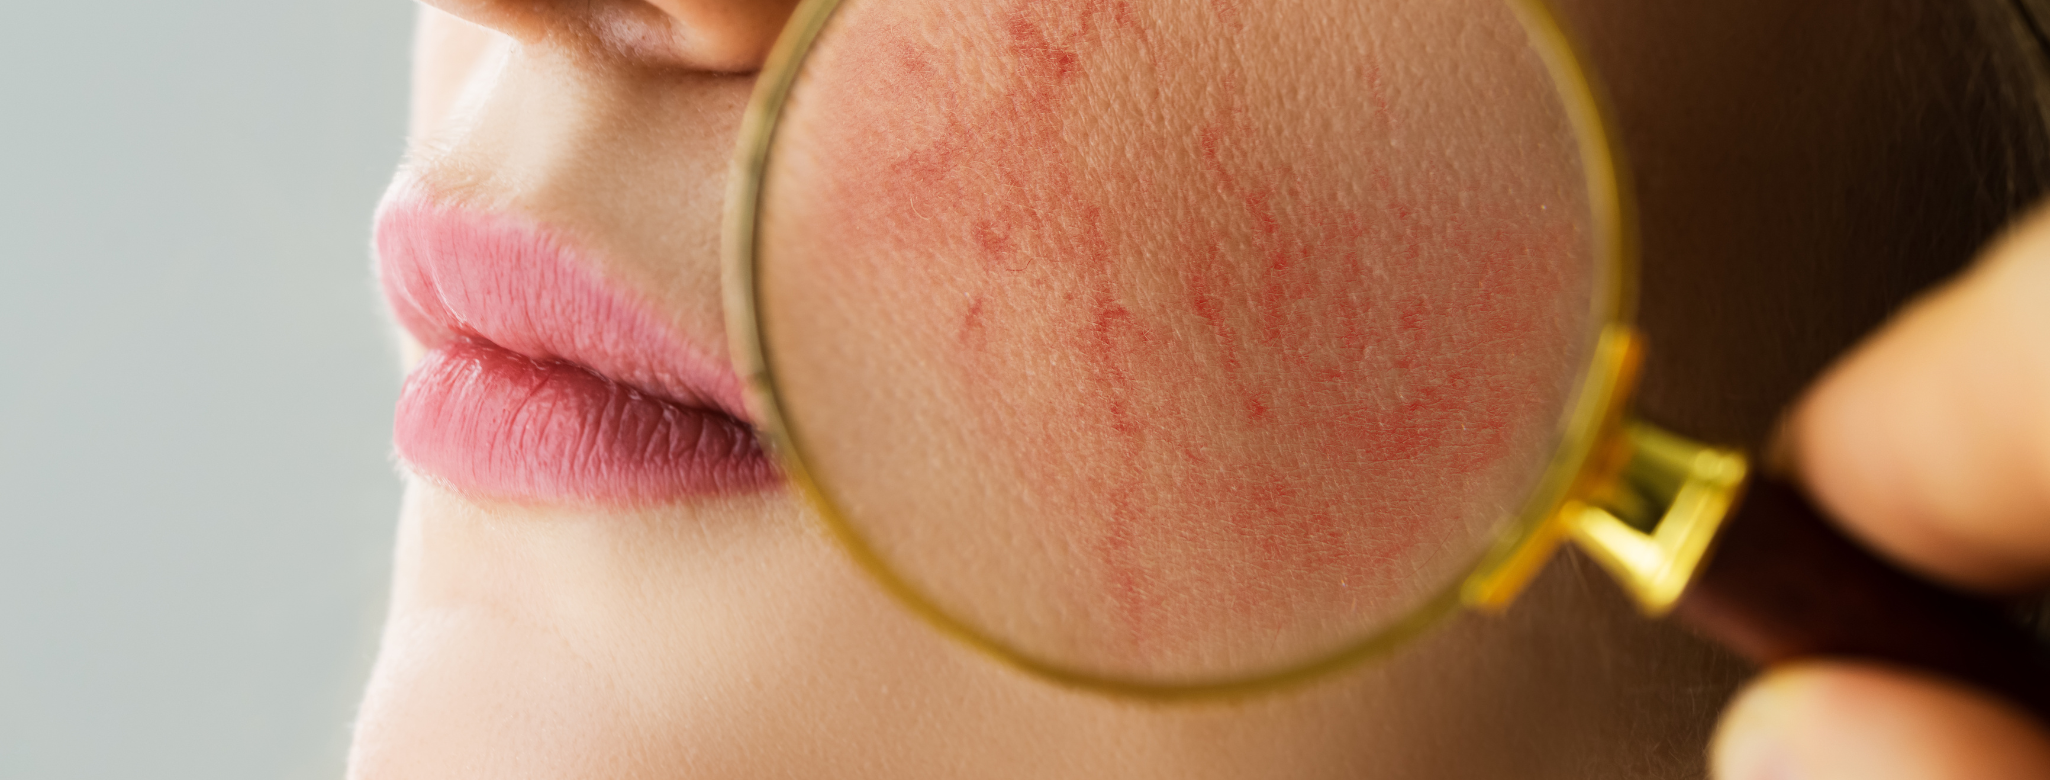 Minden, amit az arcbőr kipirosodásáról tudni kell